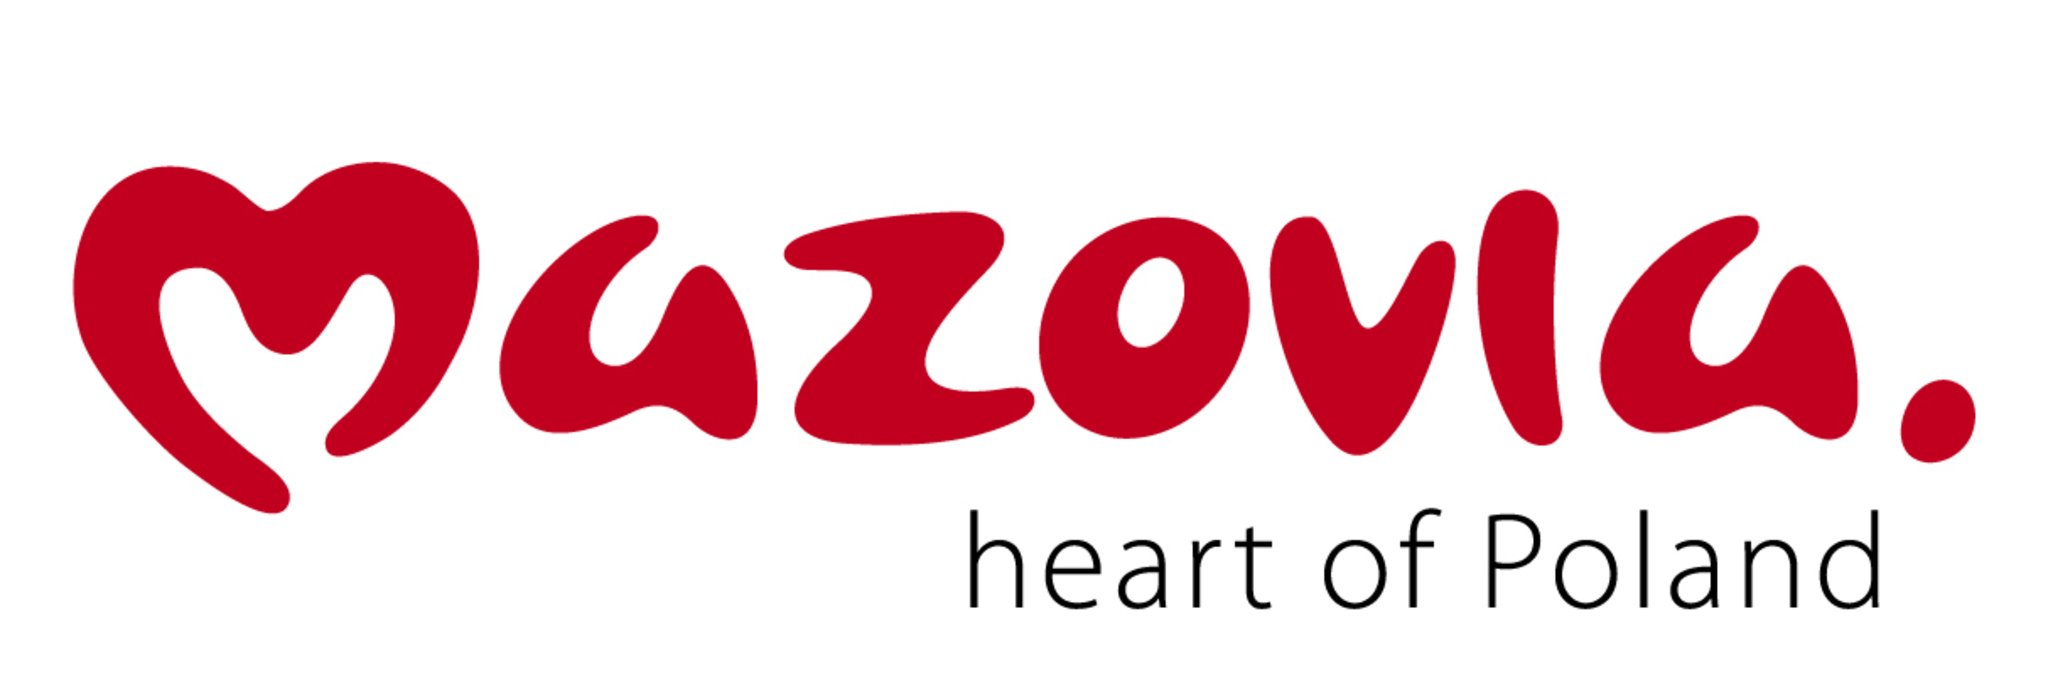 Mazovia heart of Poland